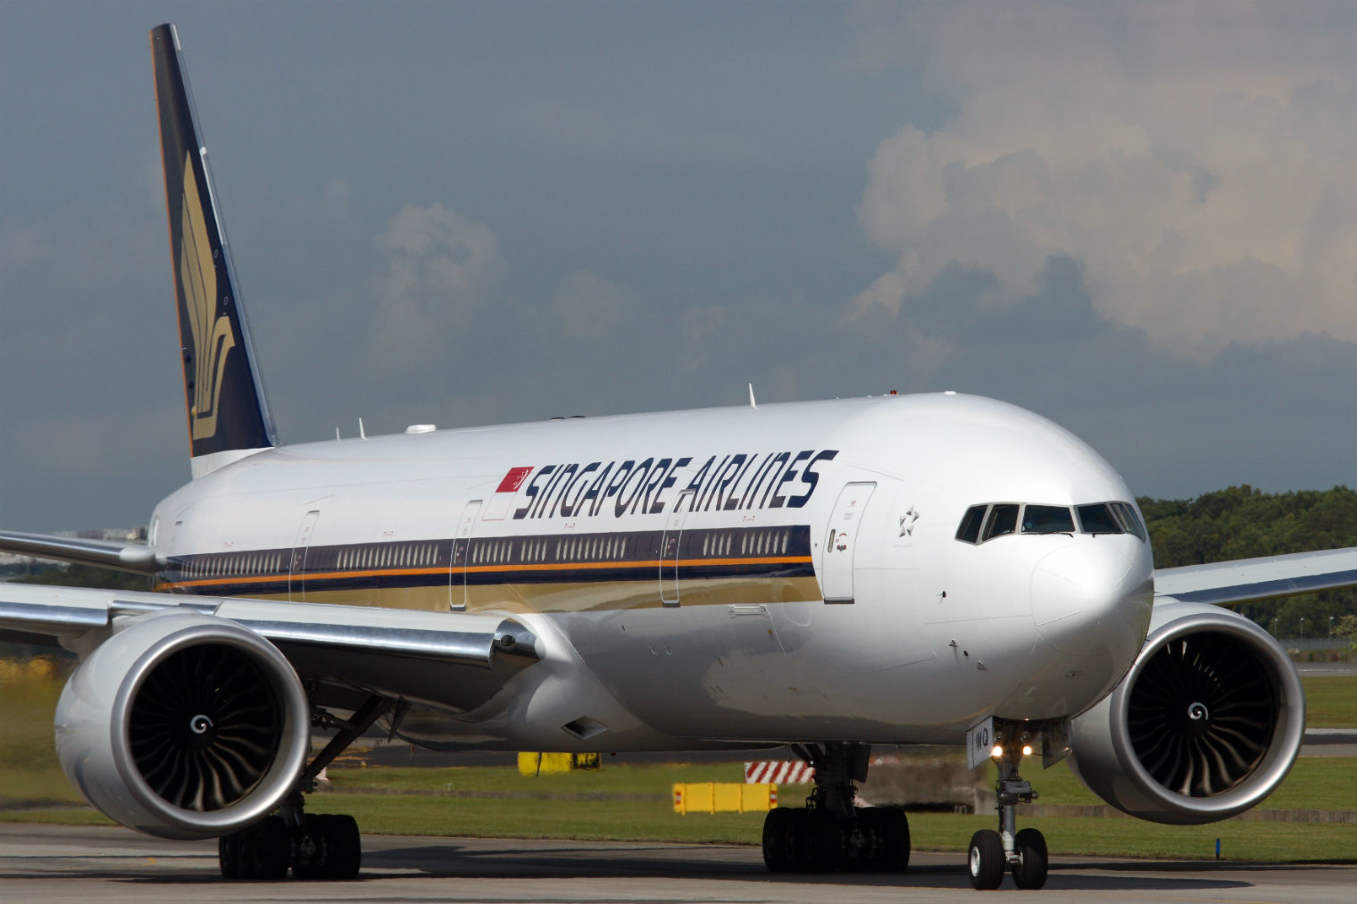 Singapore Airlines desservira Bruxelles en octobre 2020